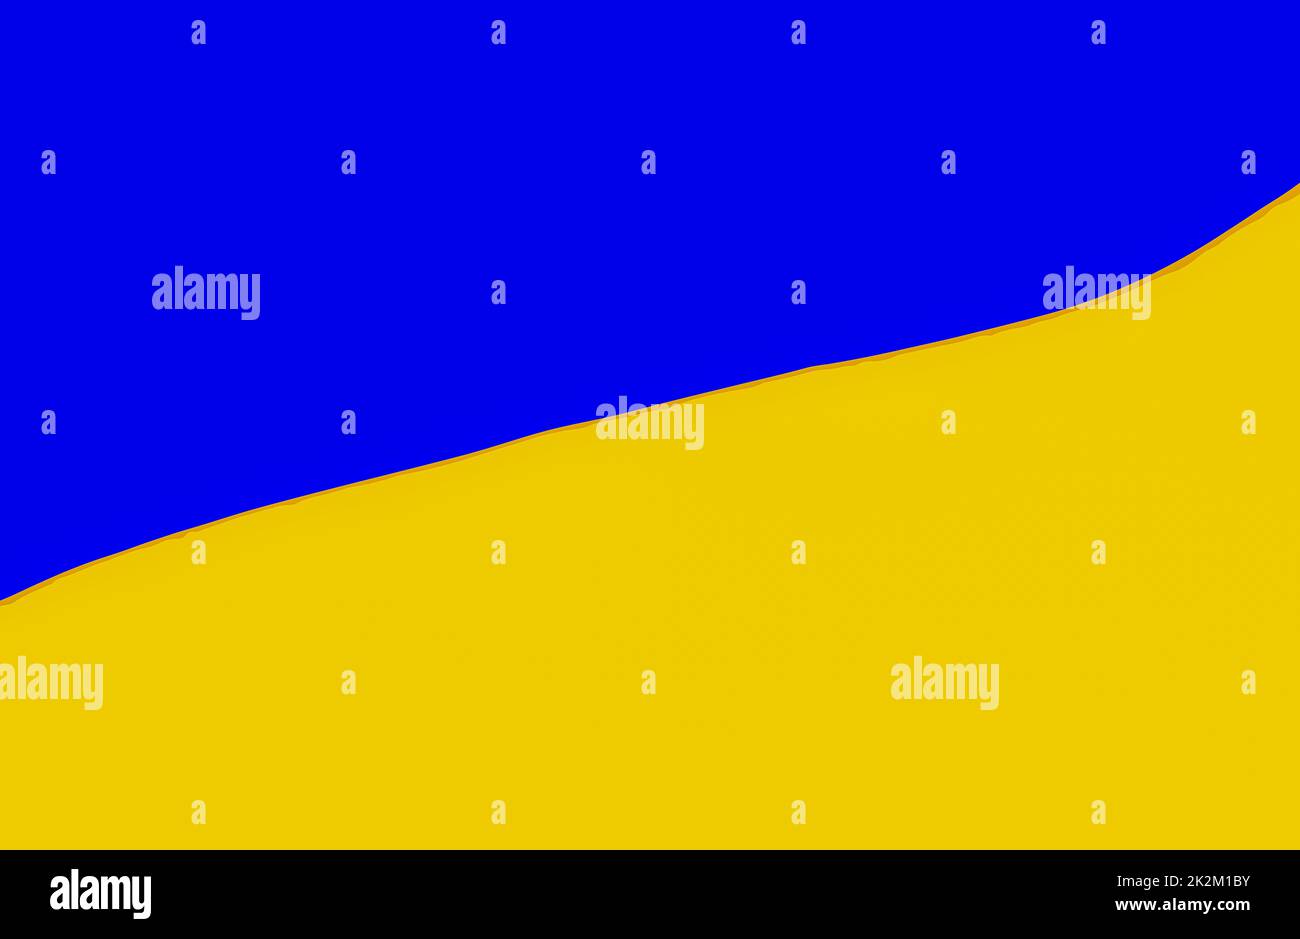 Illustrazione della bandiera nazionale dell'Ucraina. La bandiera dell'Ucraina è costituita da bande orizzontali di dimensioni uguali di blu e giallo Foto Stock